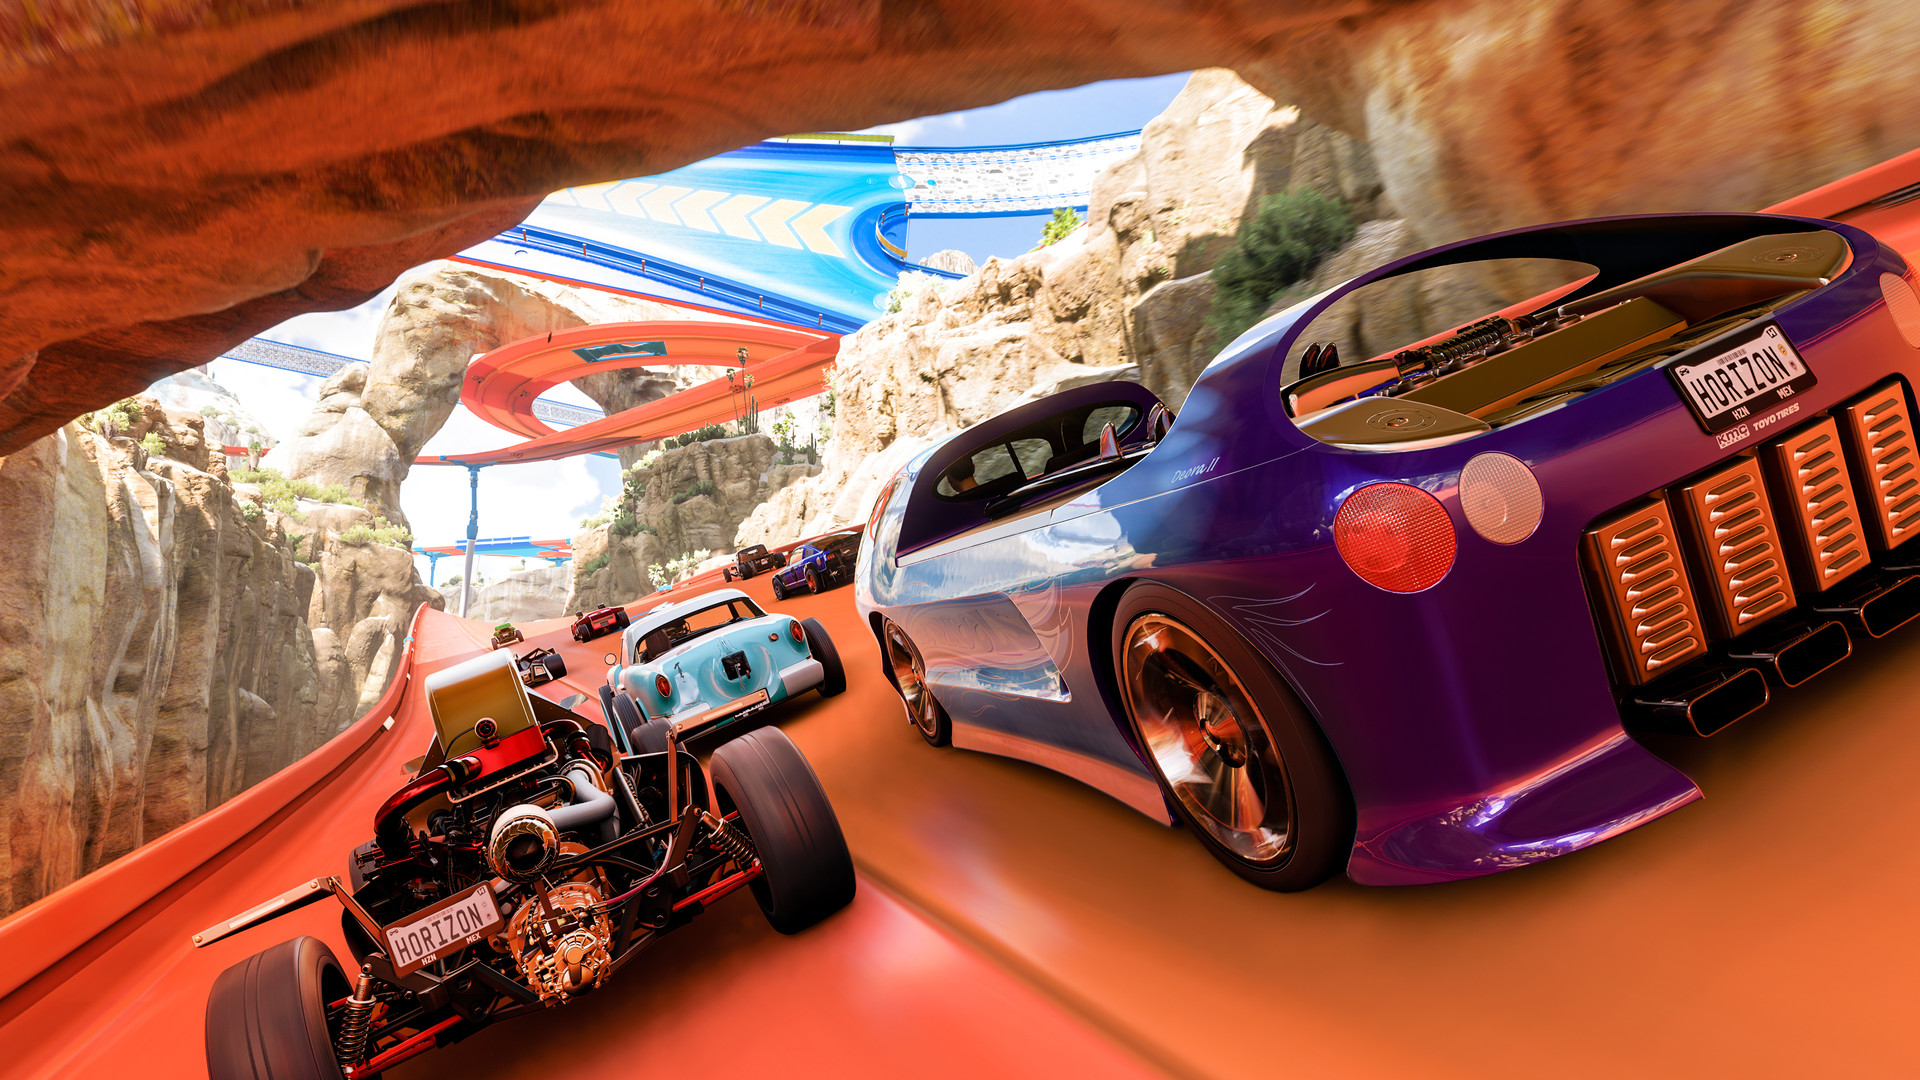 Forza Horizon 5 : la première extension Hot Wheels fuite sur Steam